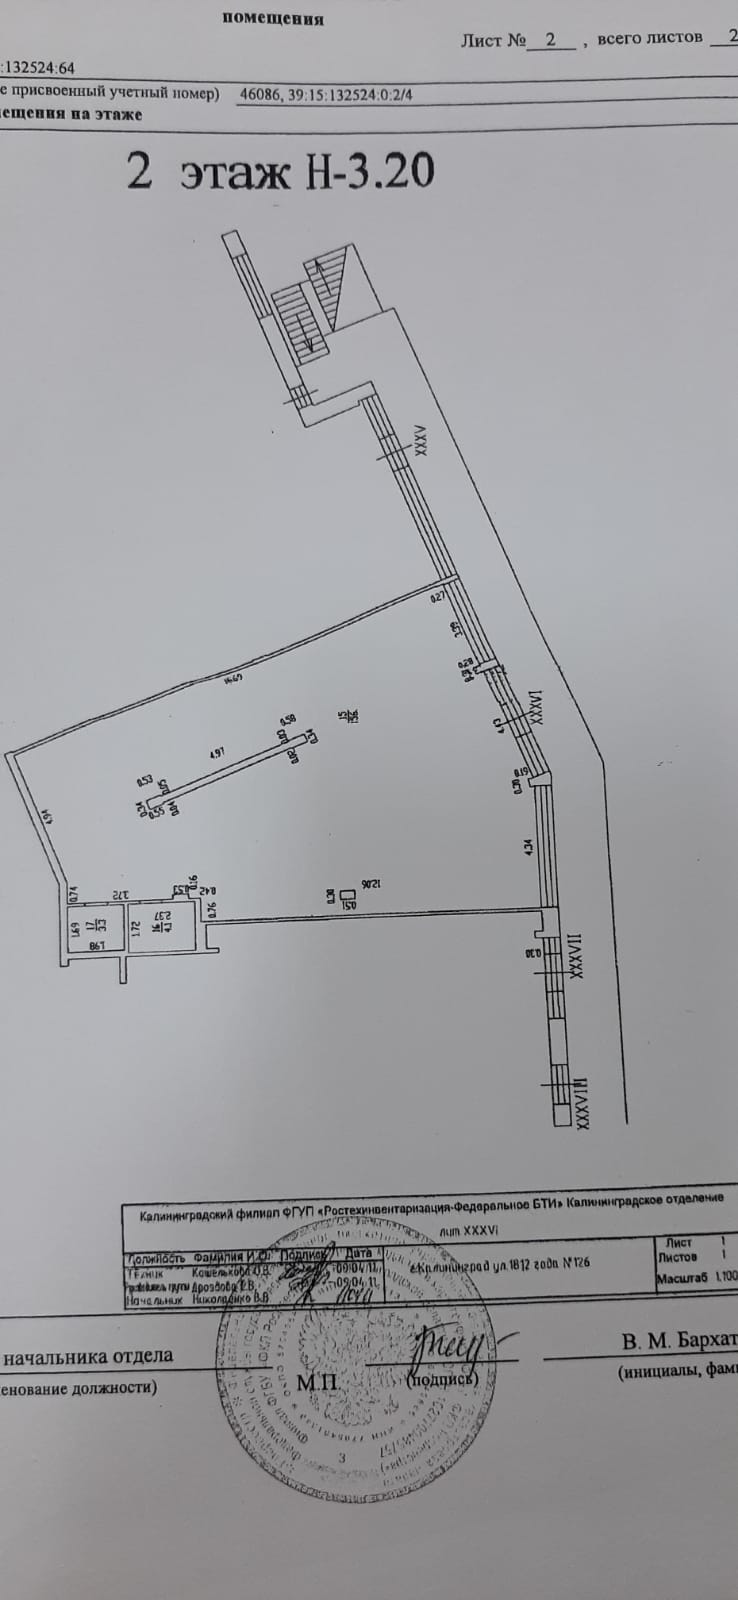 Сдам - Коммерческая недвижимость, 163,5 кв.м ул. 1812 года